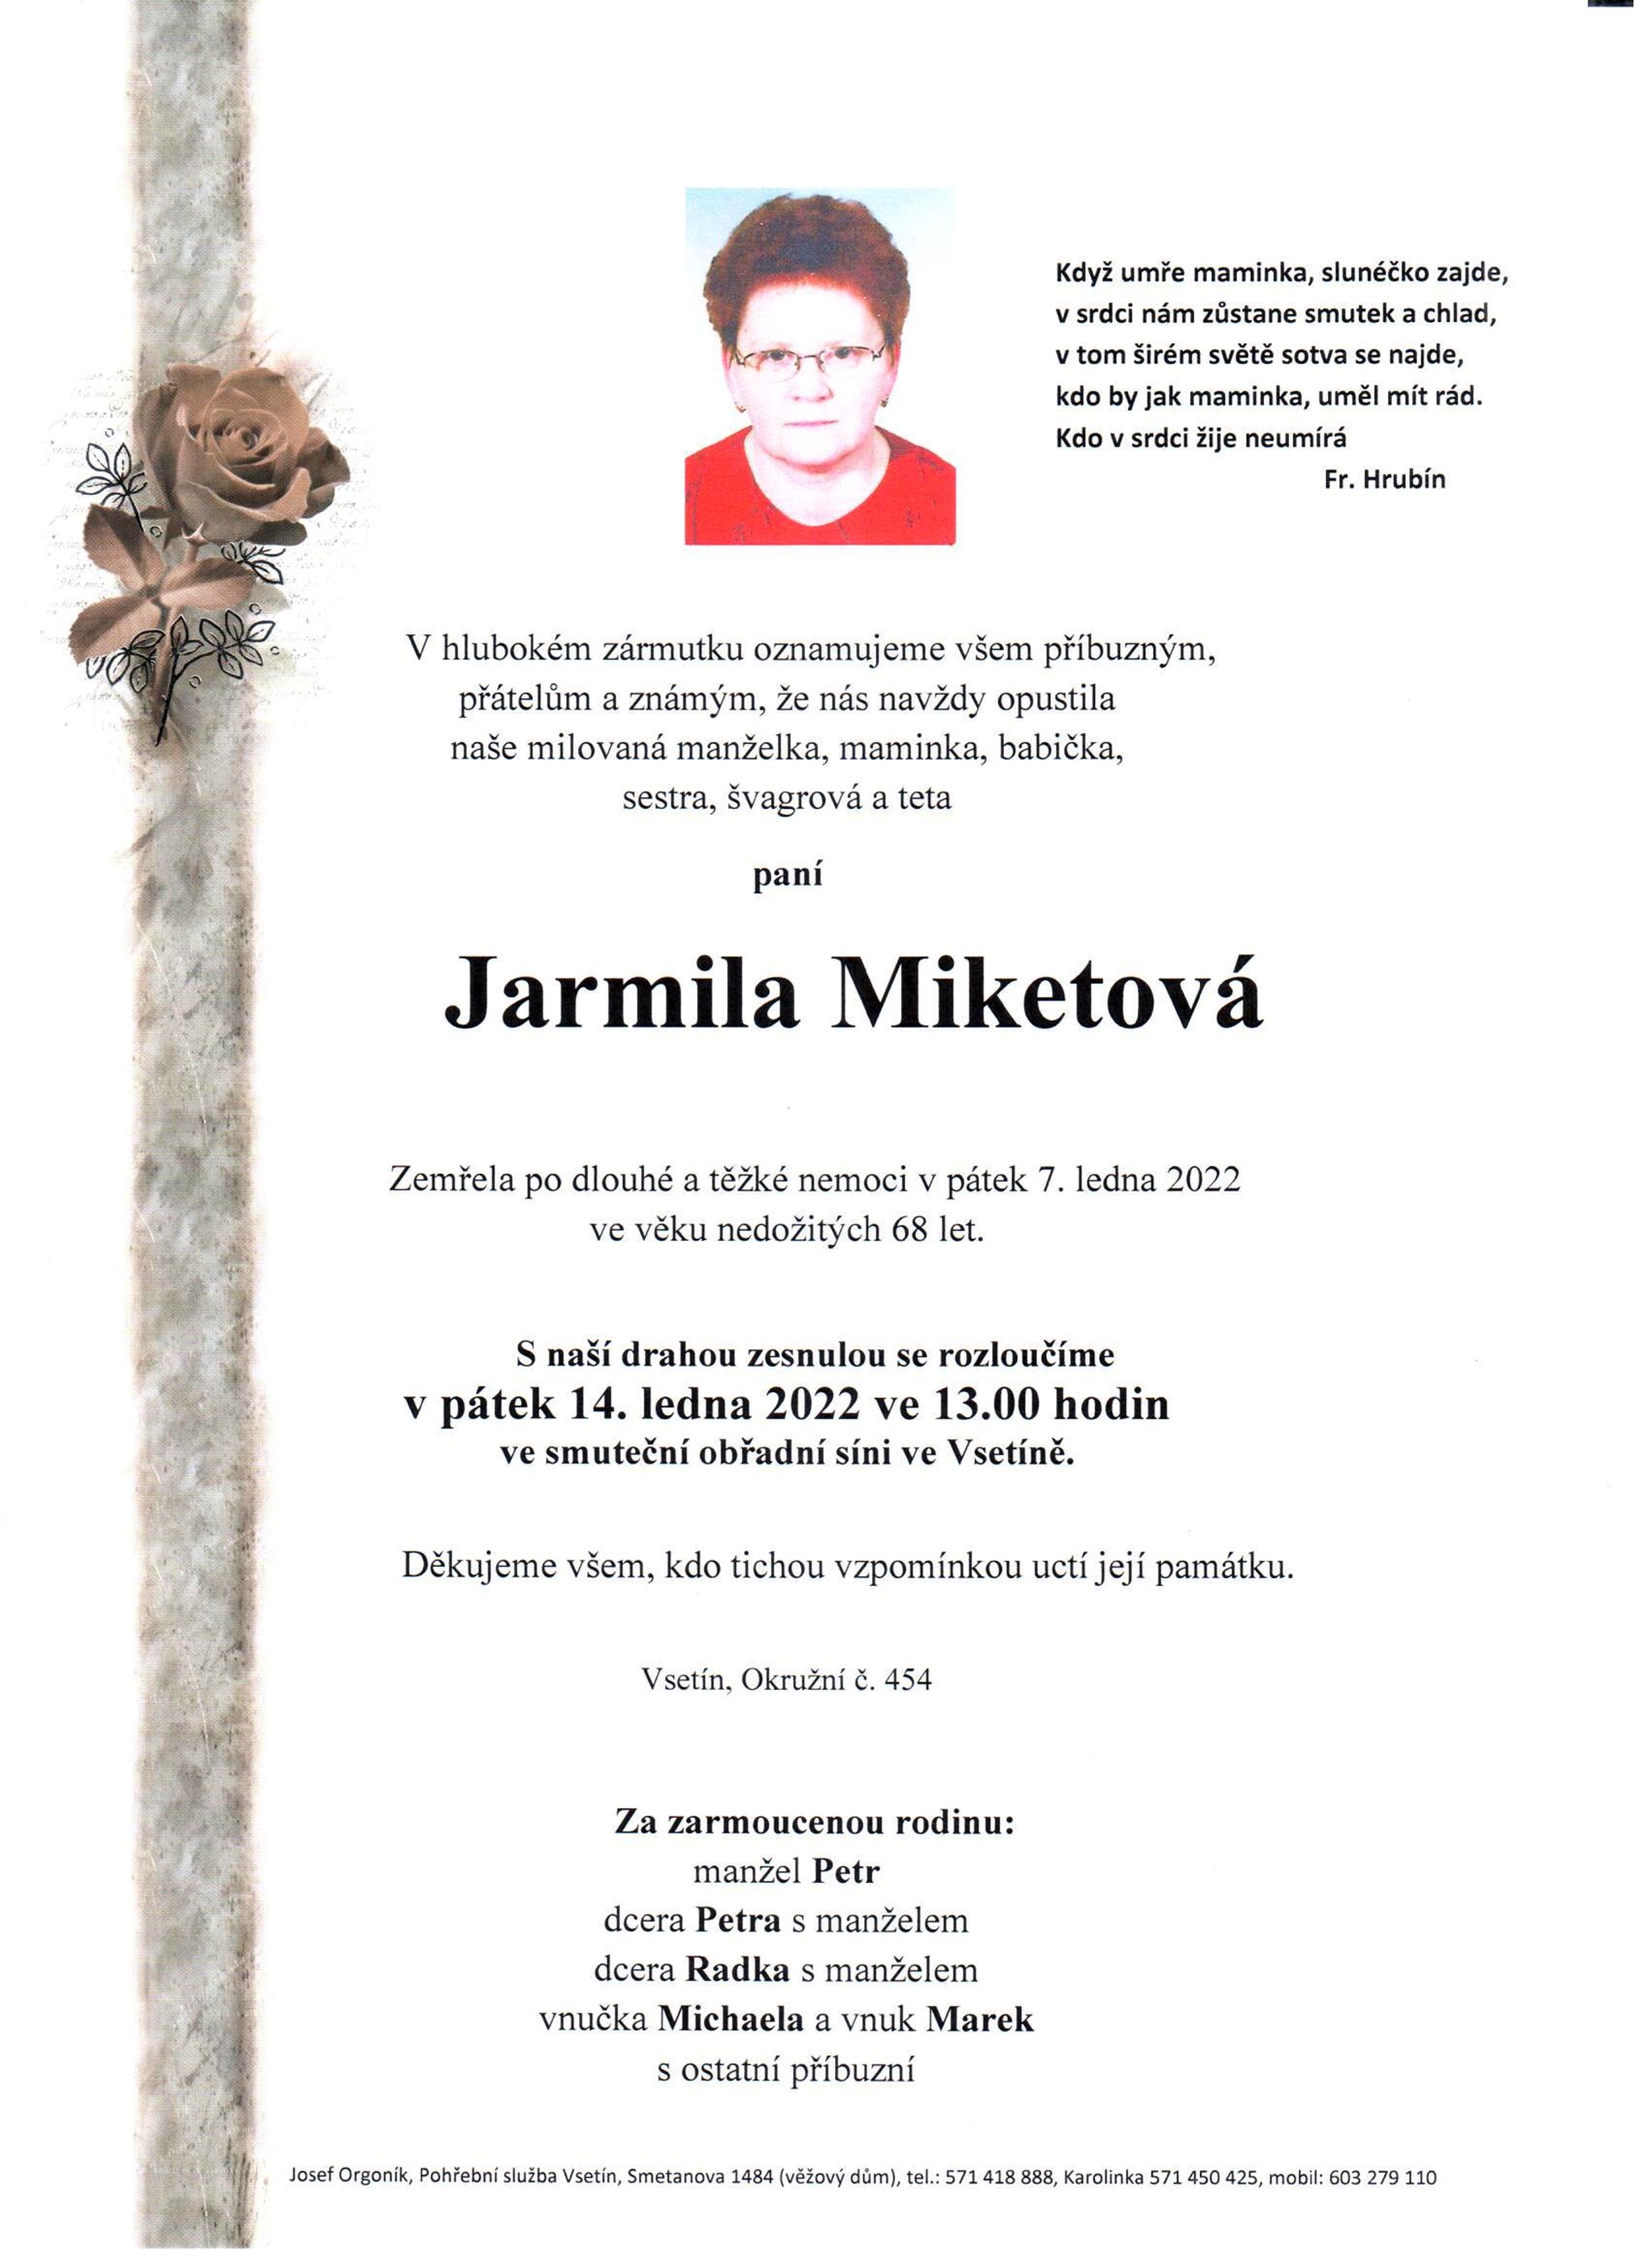 Jarmila Miketová